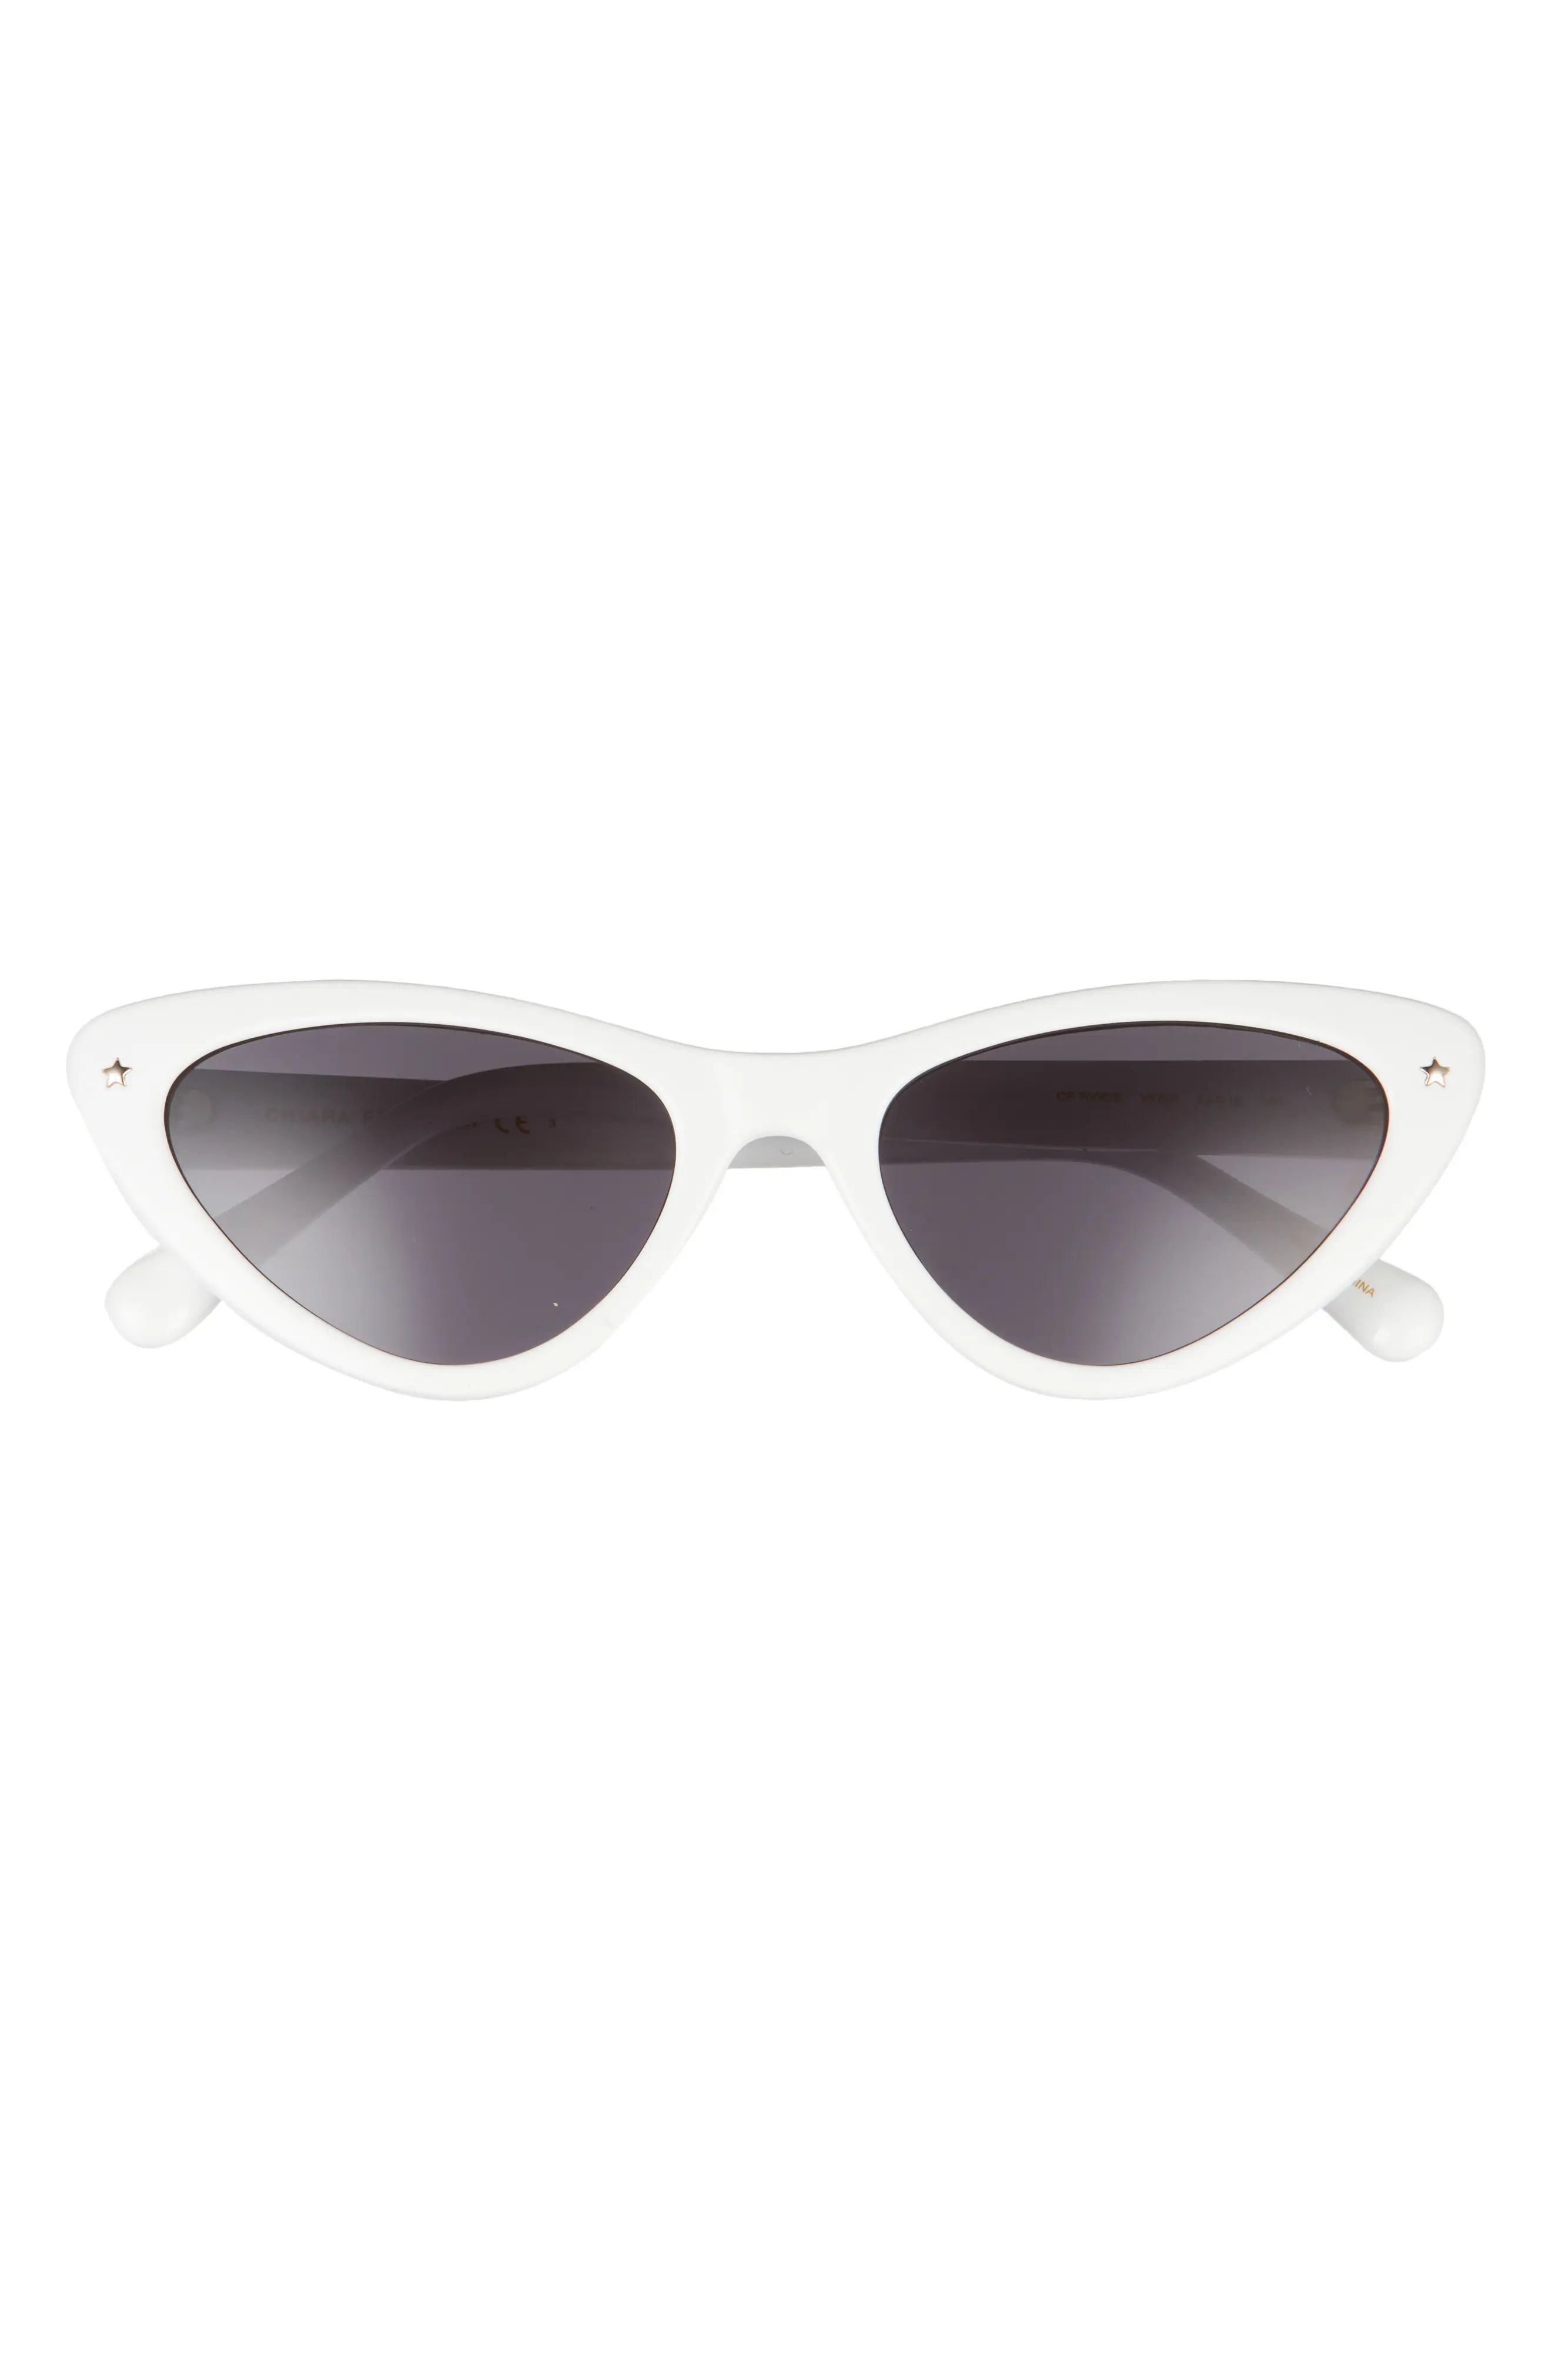 Chiara Ferragni 53mm Cat Eye Sunglasses in White/Grey at Nordstrom | Nordstrom